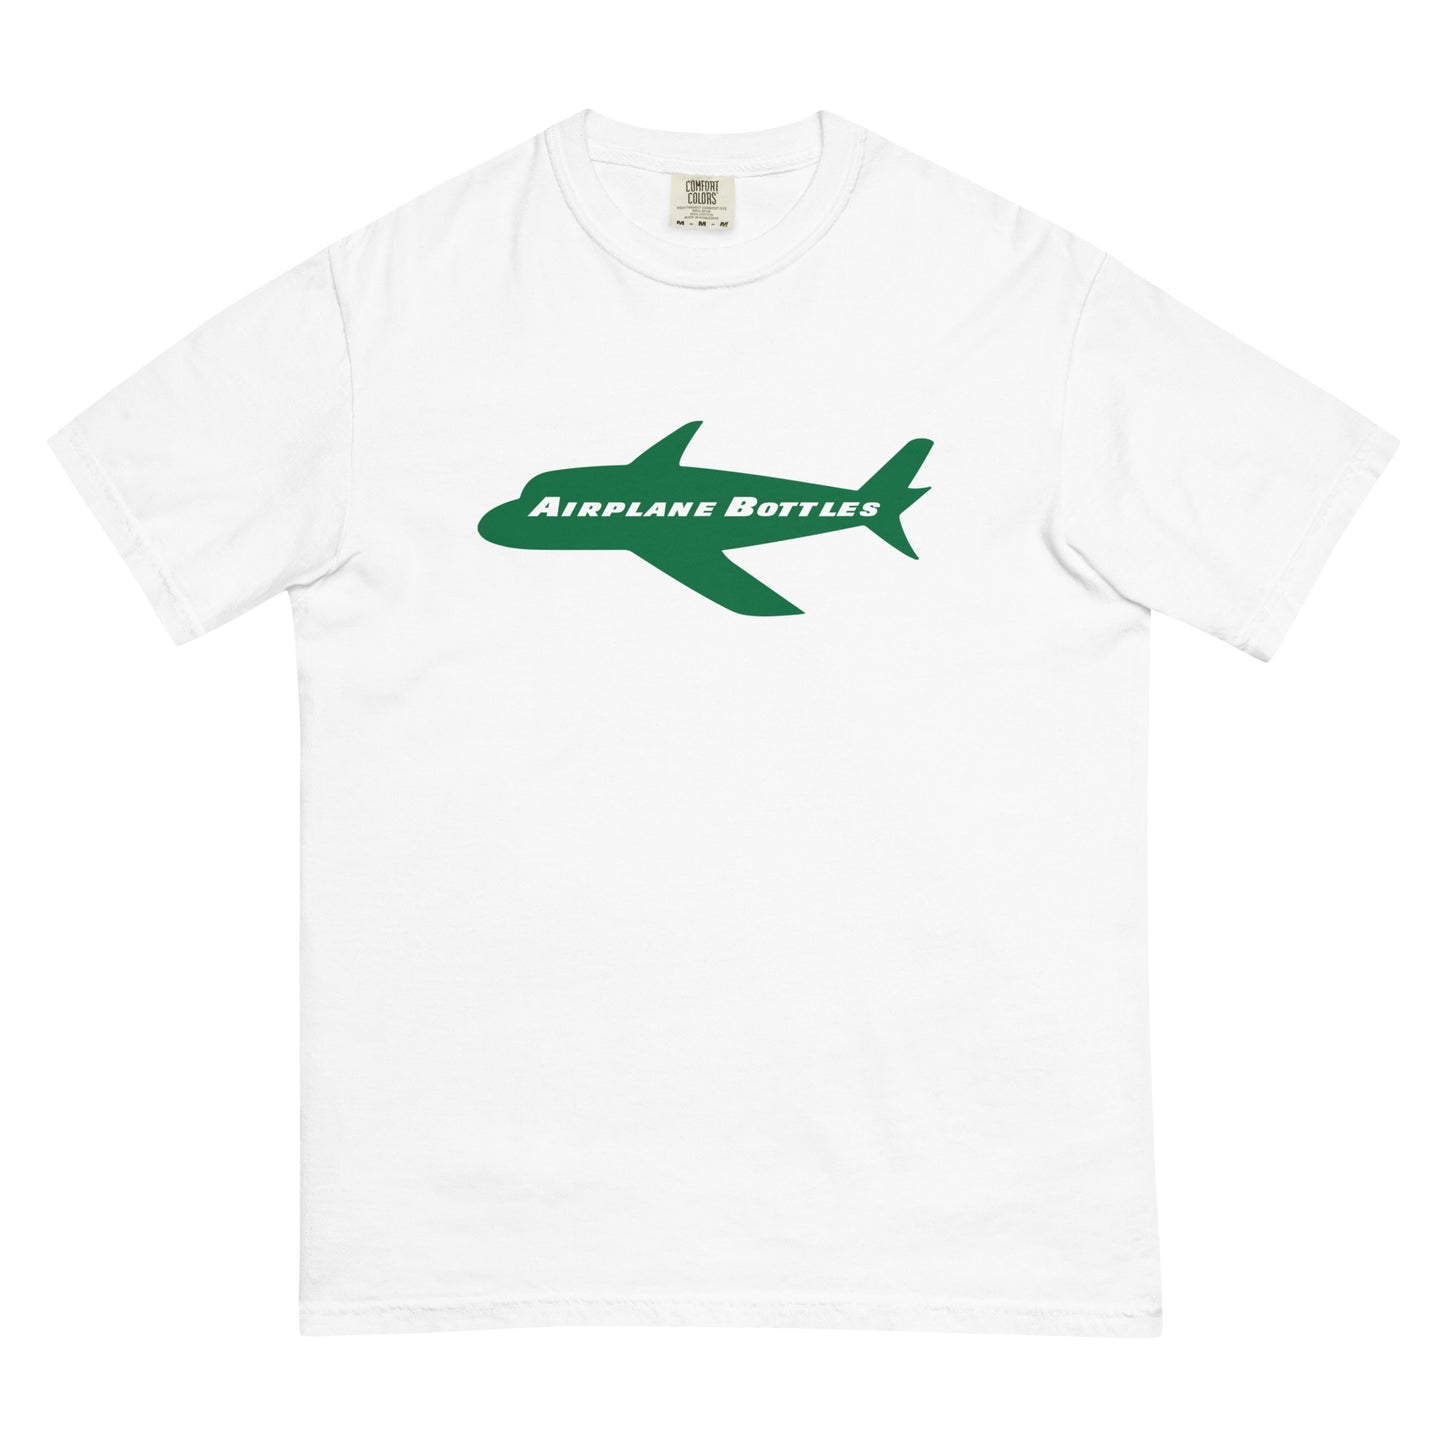 Airplane Bottles T-Shirt